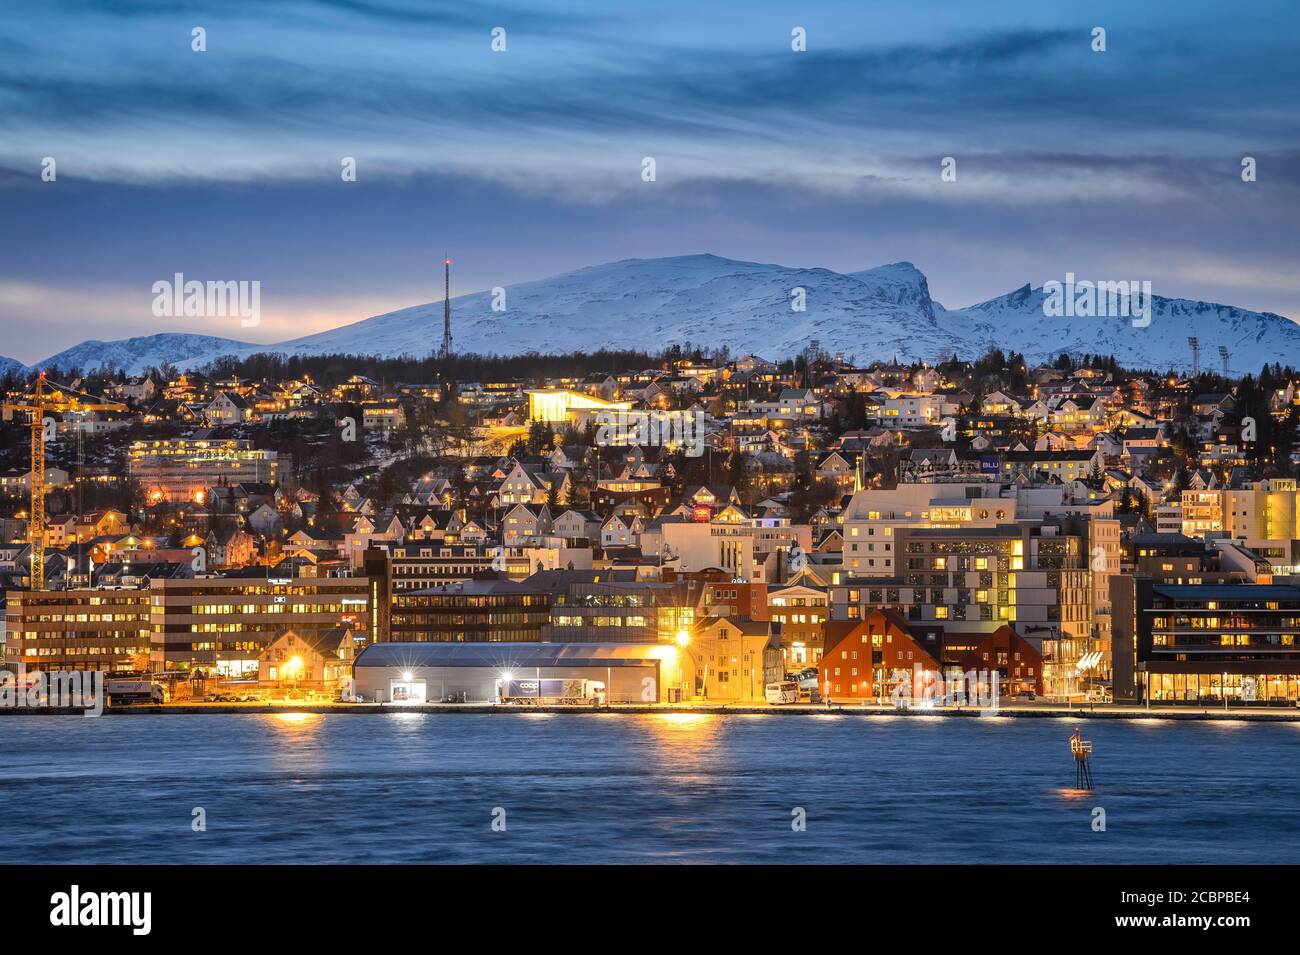 Vue sur le port et la ville au crépuscule, nuit polaire, hiver, Tromsoe, Troms, Norvège Banque D'Images